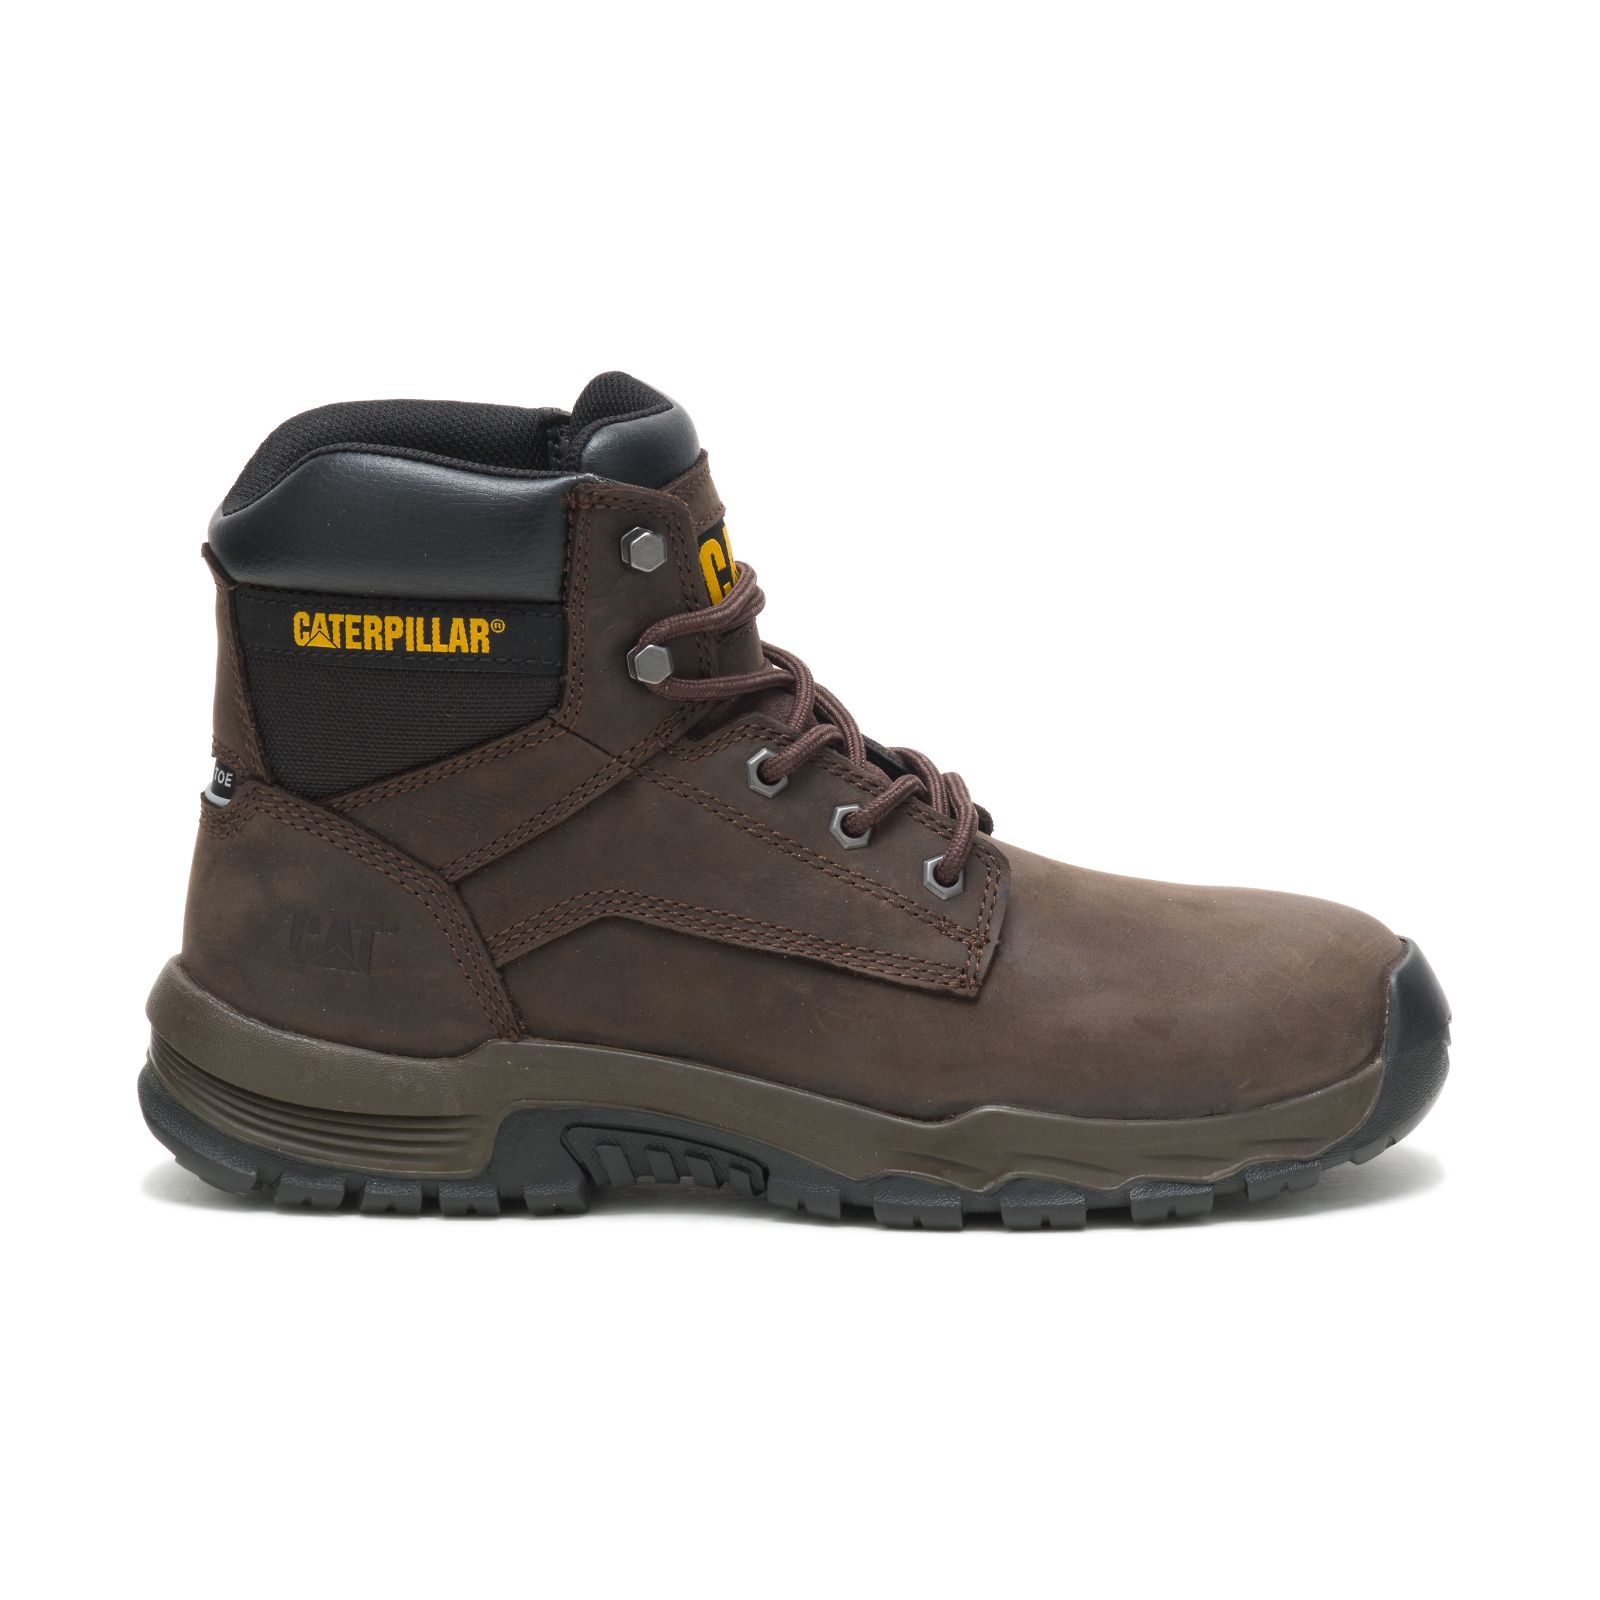 Caterpillar Work Boots UAE Online - Caterpillar Upholder Waterproof Steel Toe Mens - Dark Chocolate XBINUW306